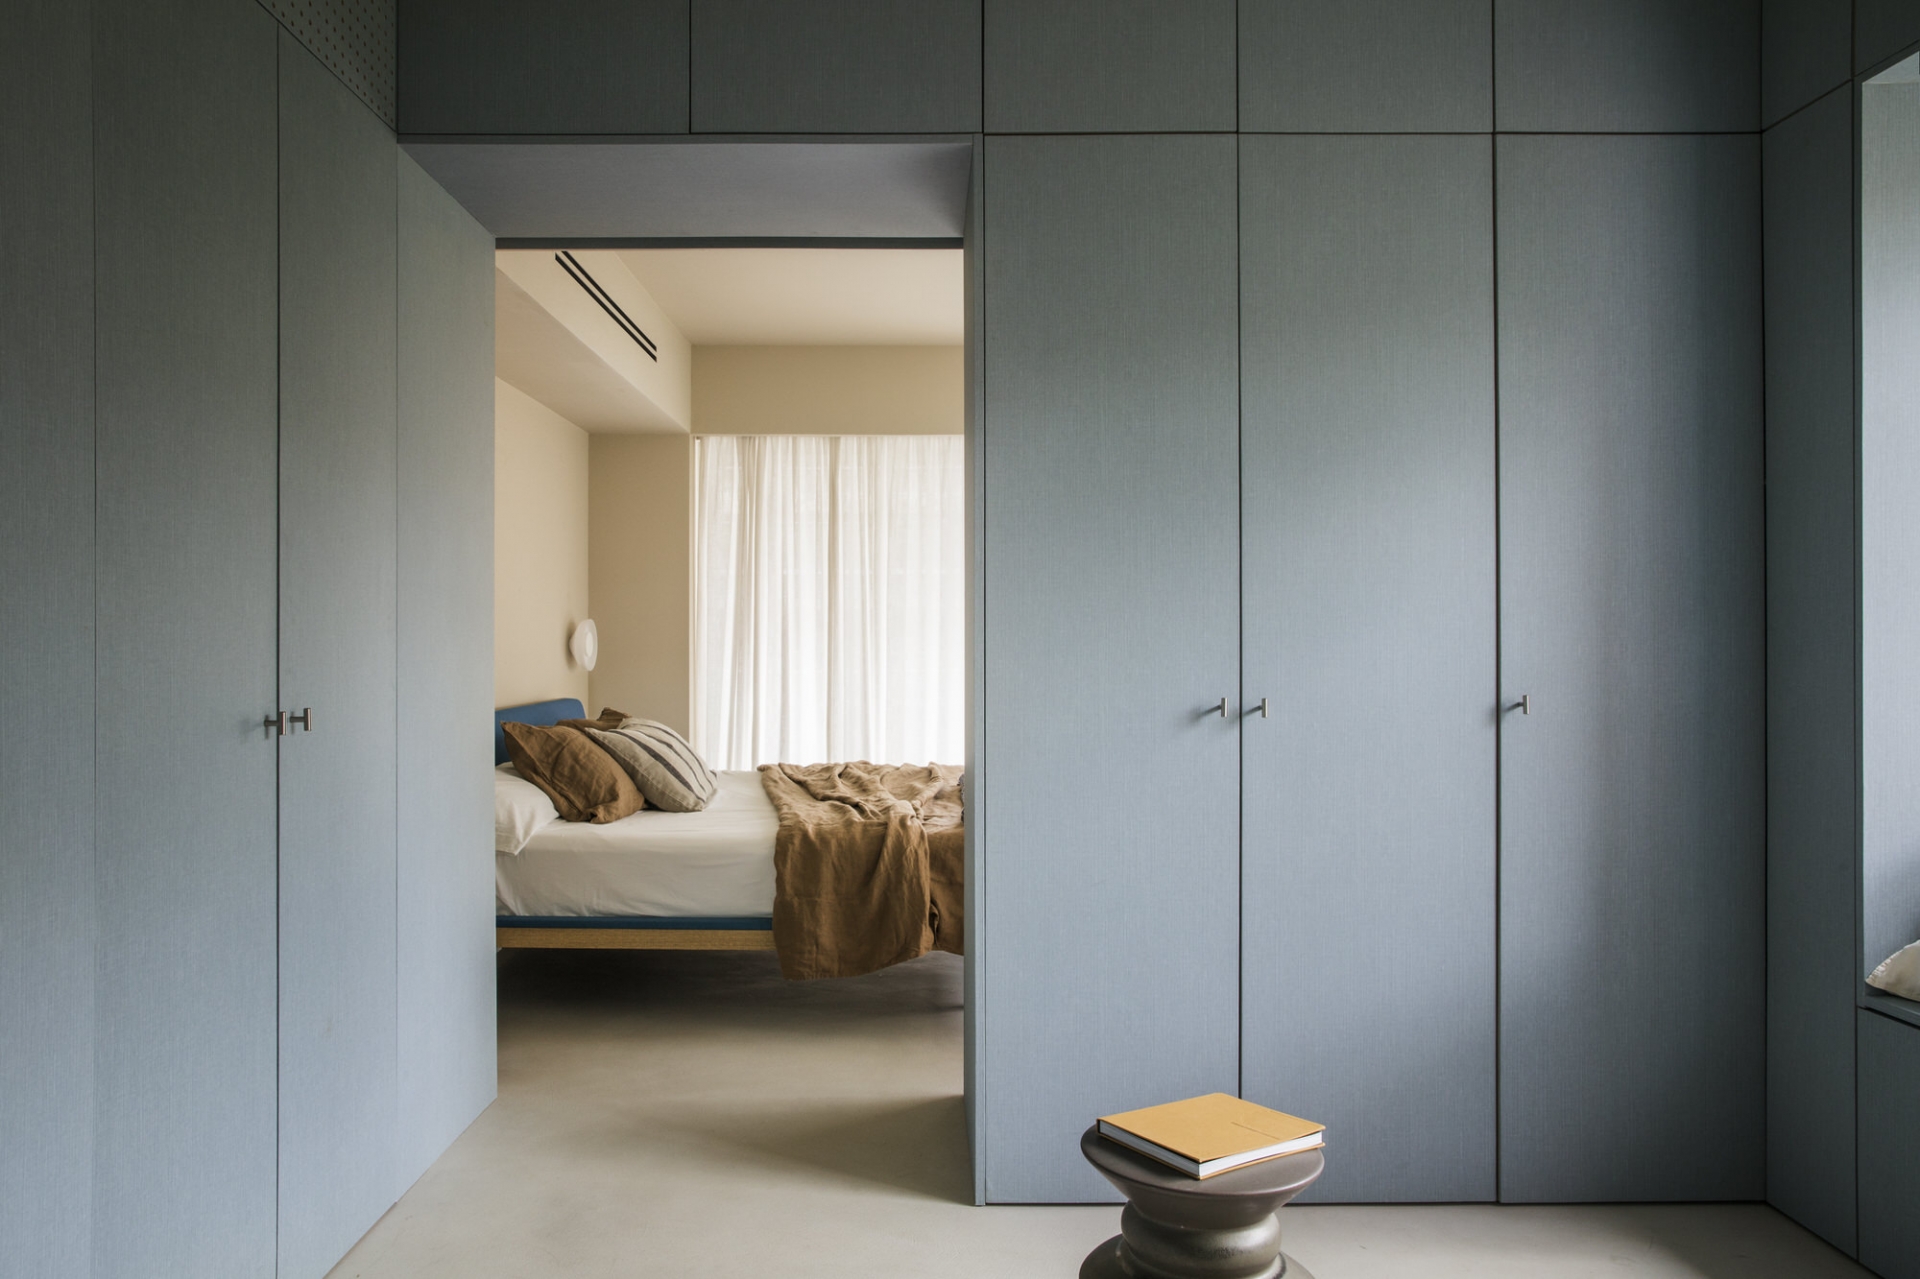 Xung quanh phòng ngủ chính của bố mẹ được thiết lập hệ thống tủ lưu trữ cao kịch trần với gam màu xanh xám thời trang. Giải pháp này giúp tối ưu hóa chiều cao trần, cho không gian luôn gọn gàng, ngăn nắp.